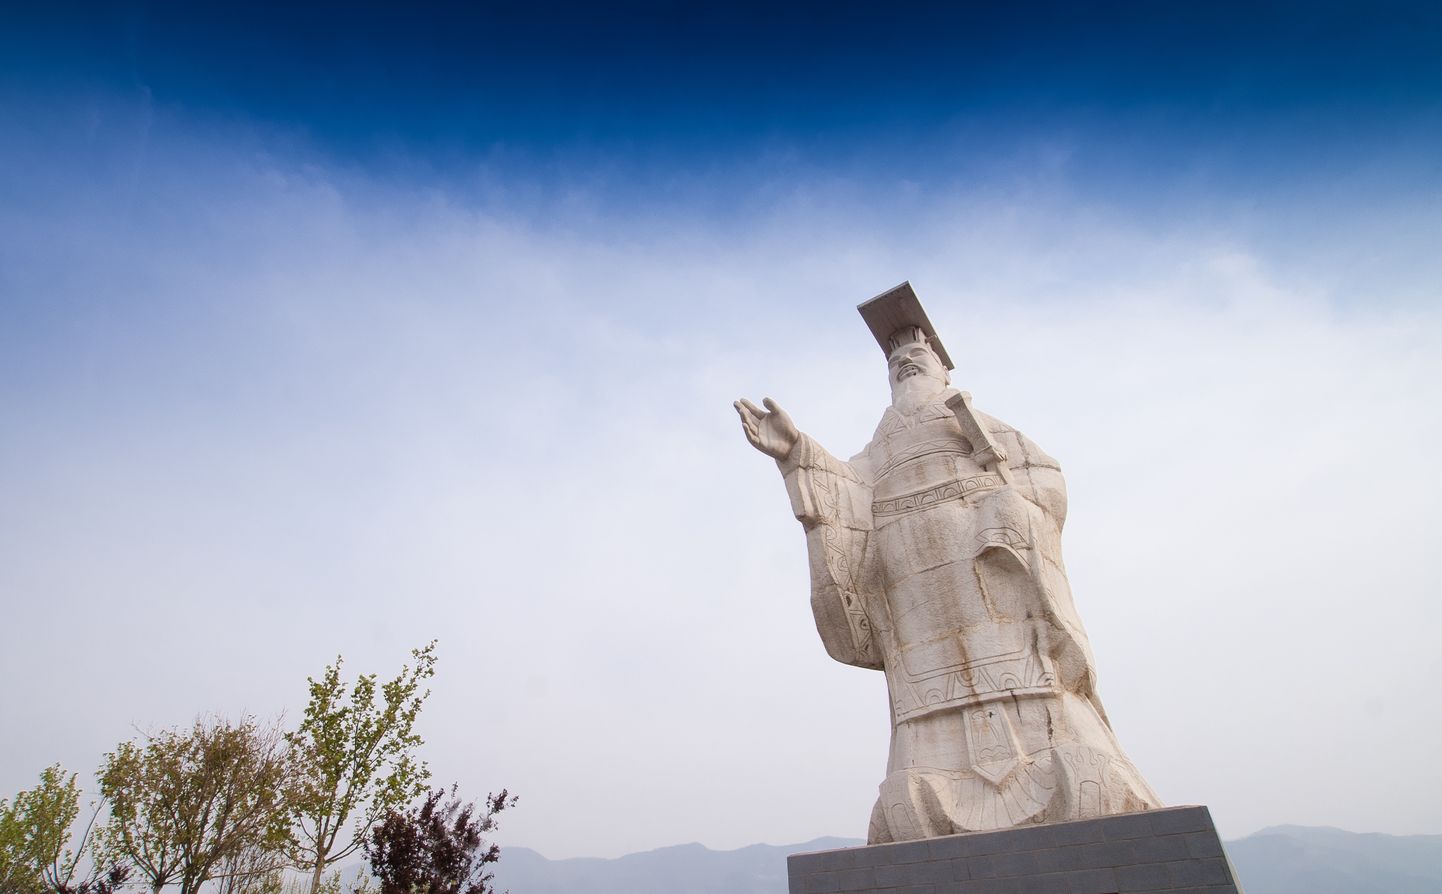 Hiina esimese keisri Qin Shi Huangi kuju Hiinas Xi'anis ta haua lähedal